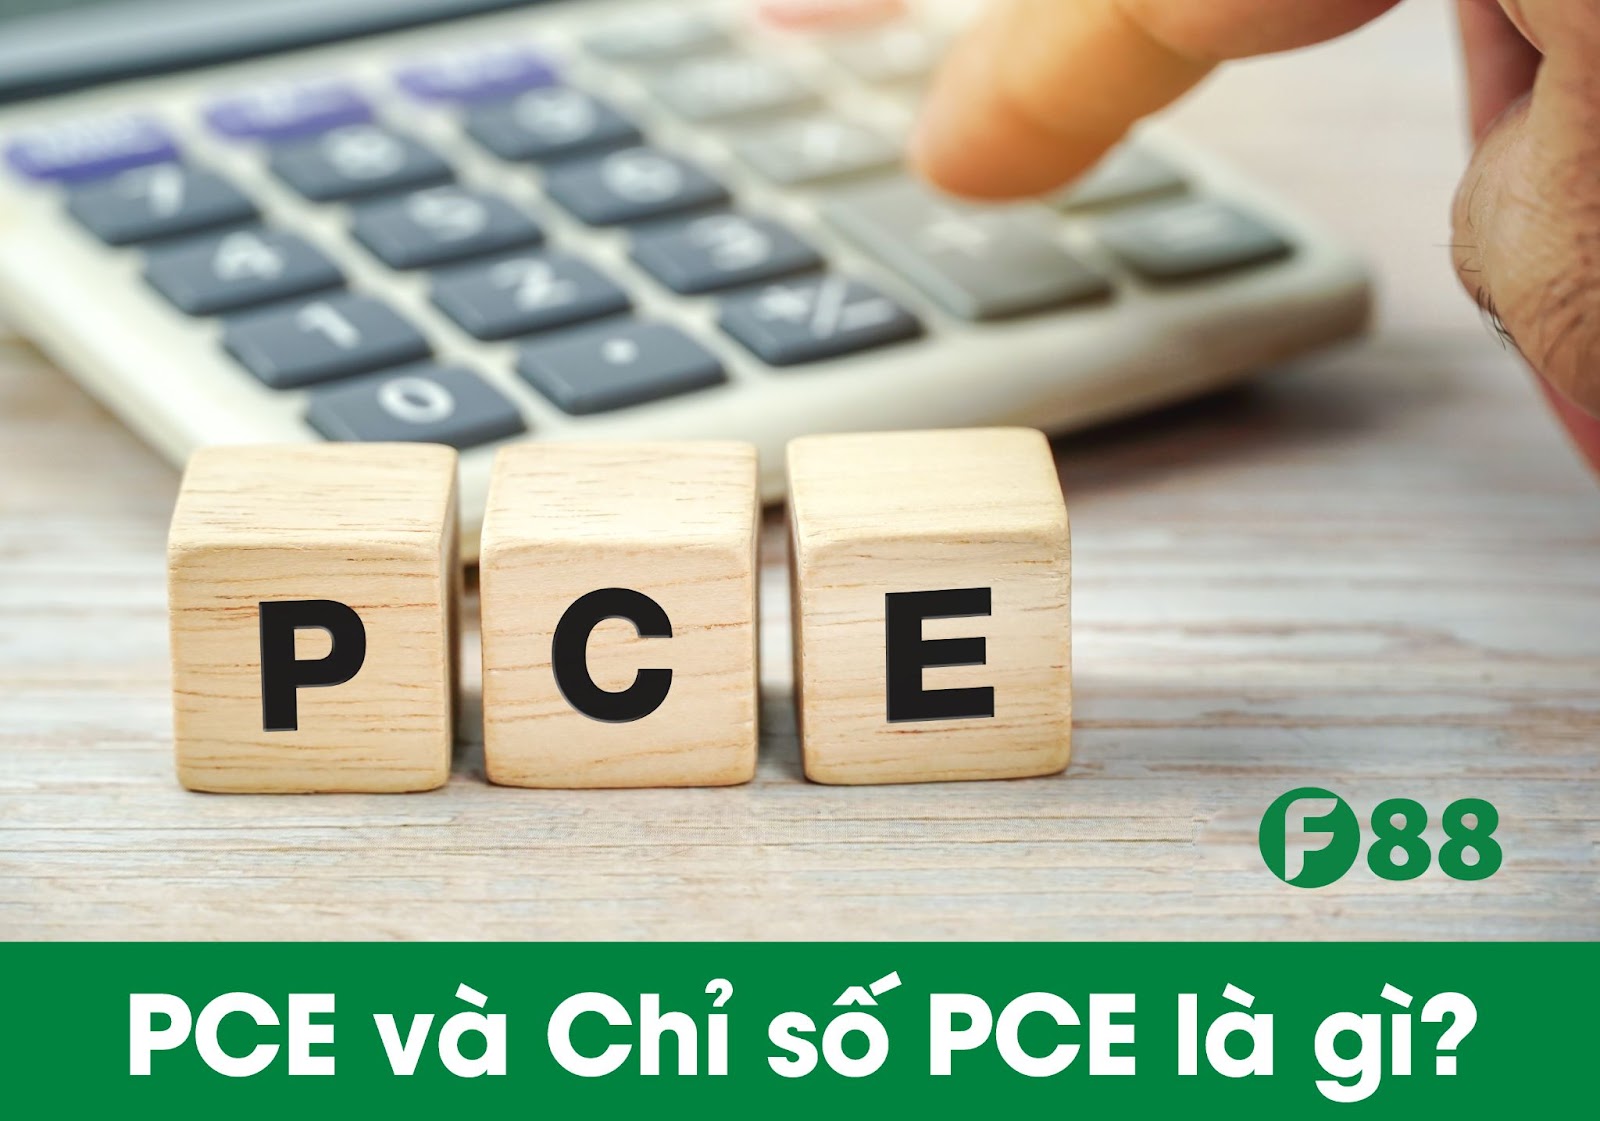 PCE là gì?